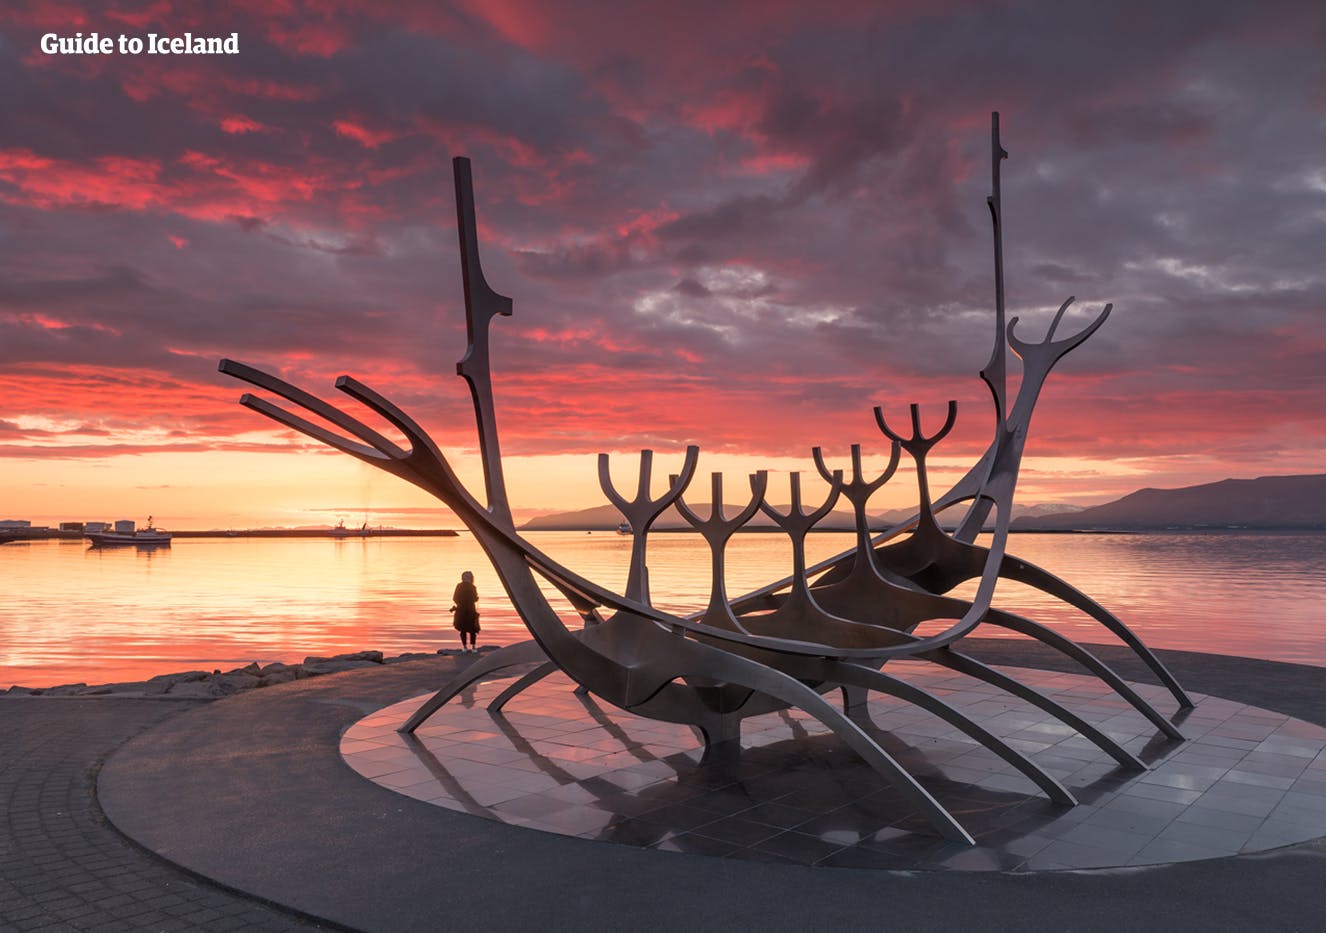 Der ‚Sun Voyager‘ ist eine Metallskulptur von einem langen Schiff, die auf Islands Geschichte als Wikingernation anspielt.